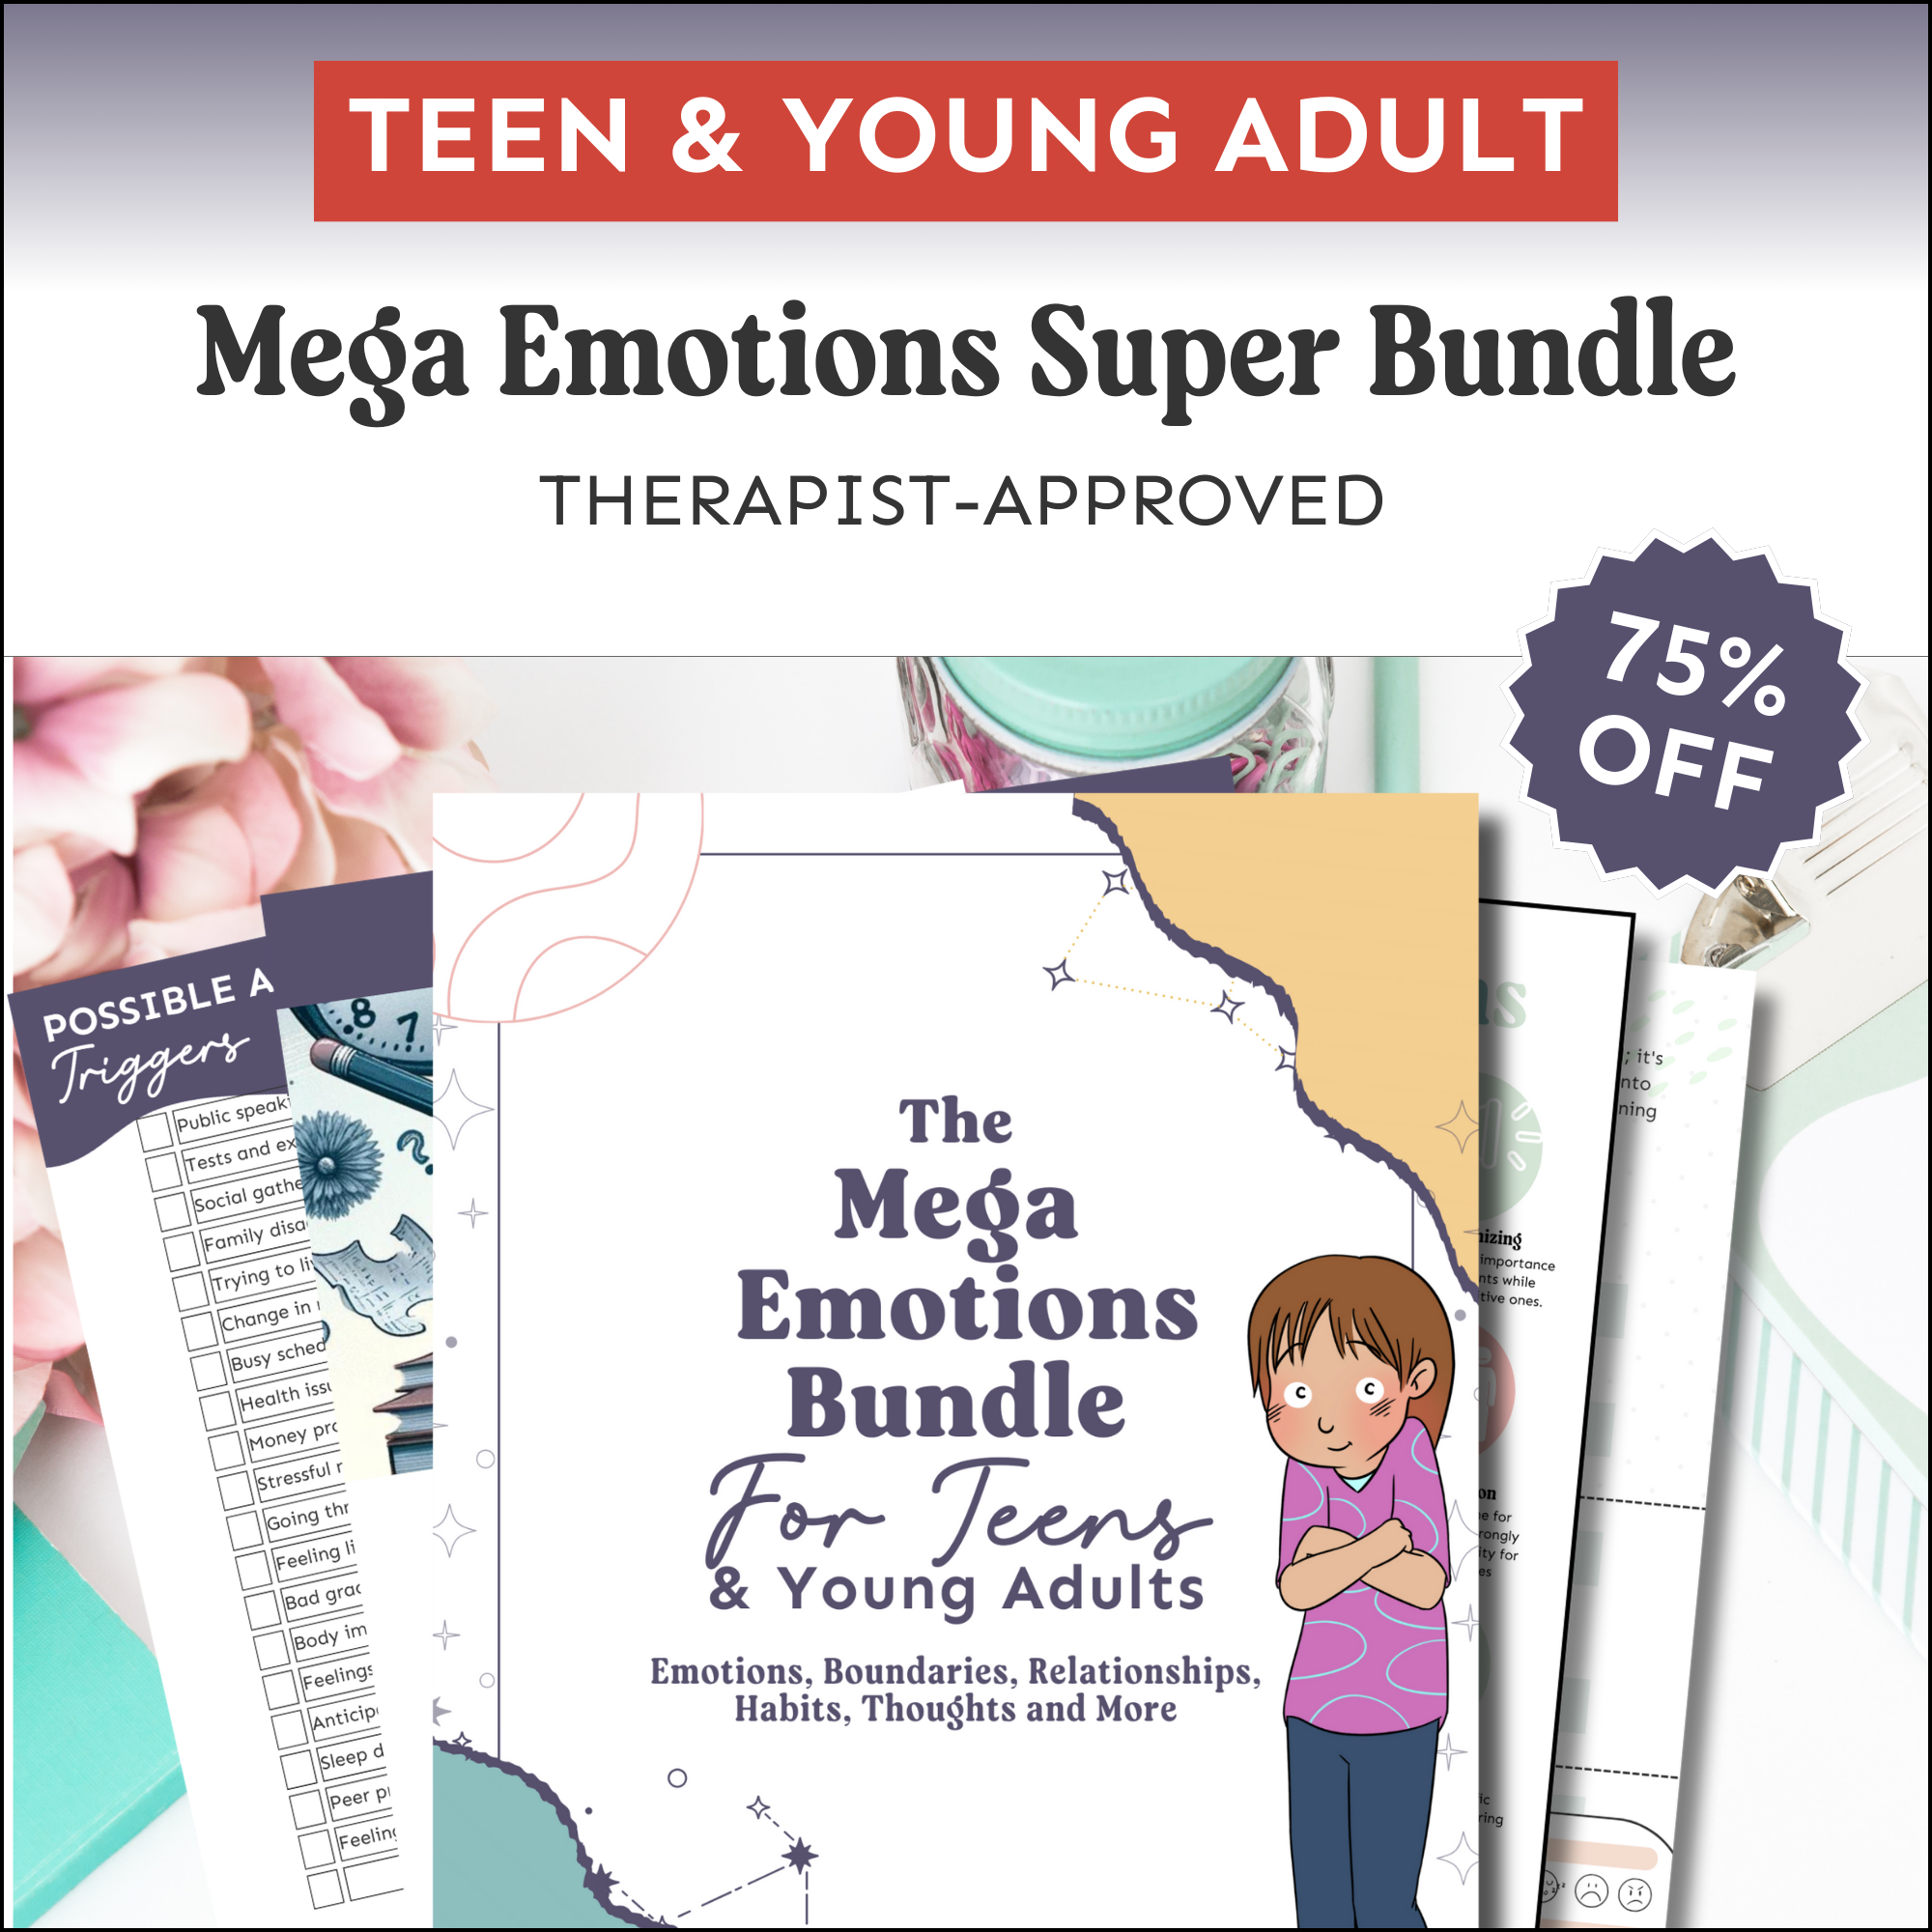 Teen & Young Adult Mega Emotions Super Bundle